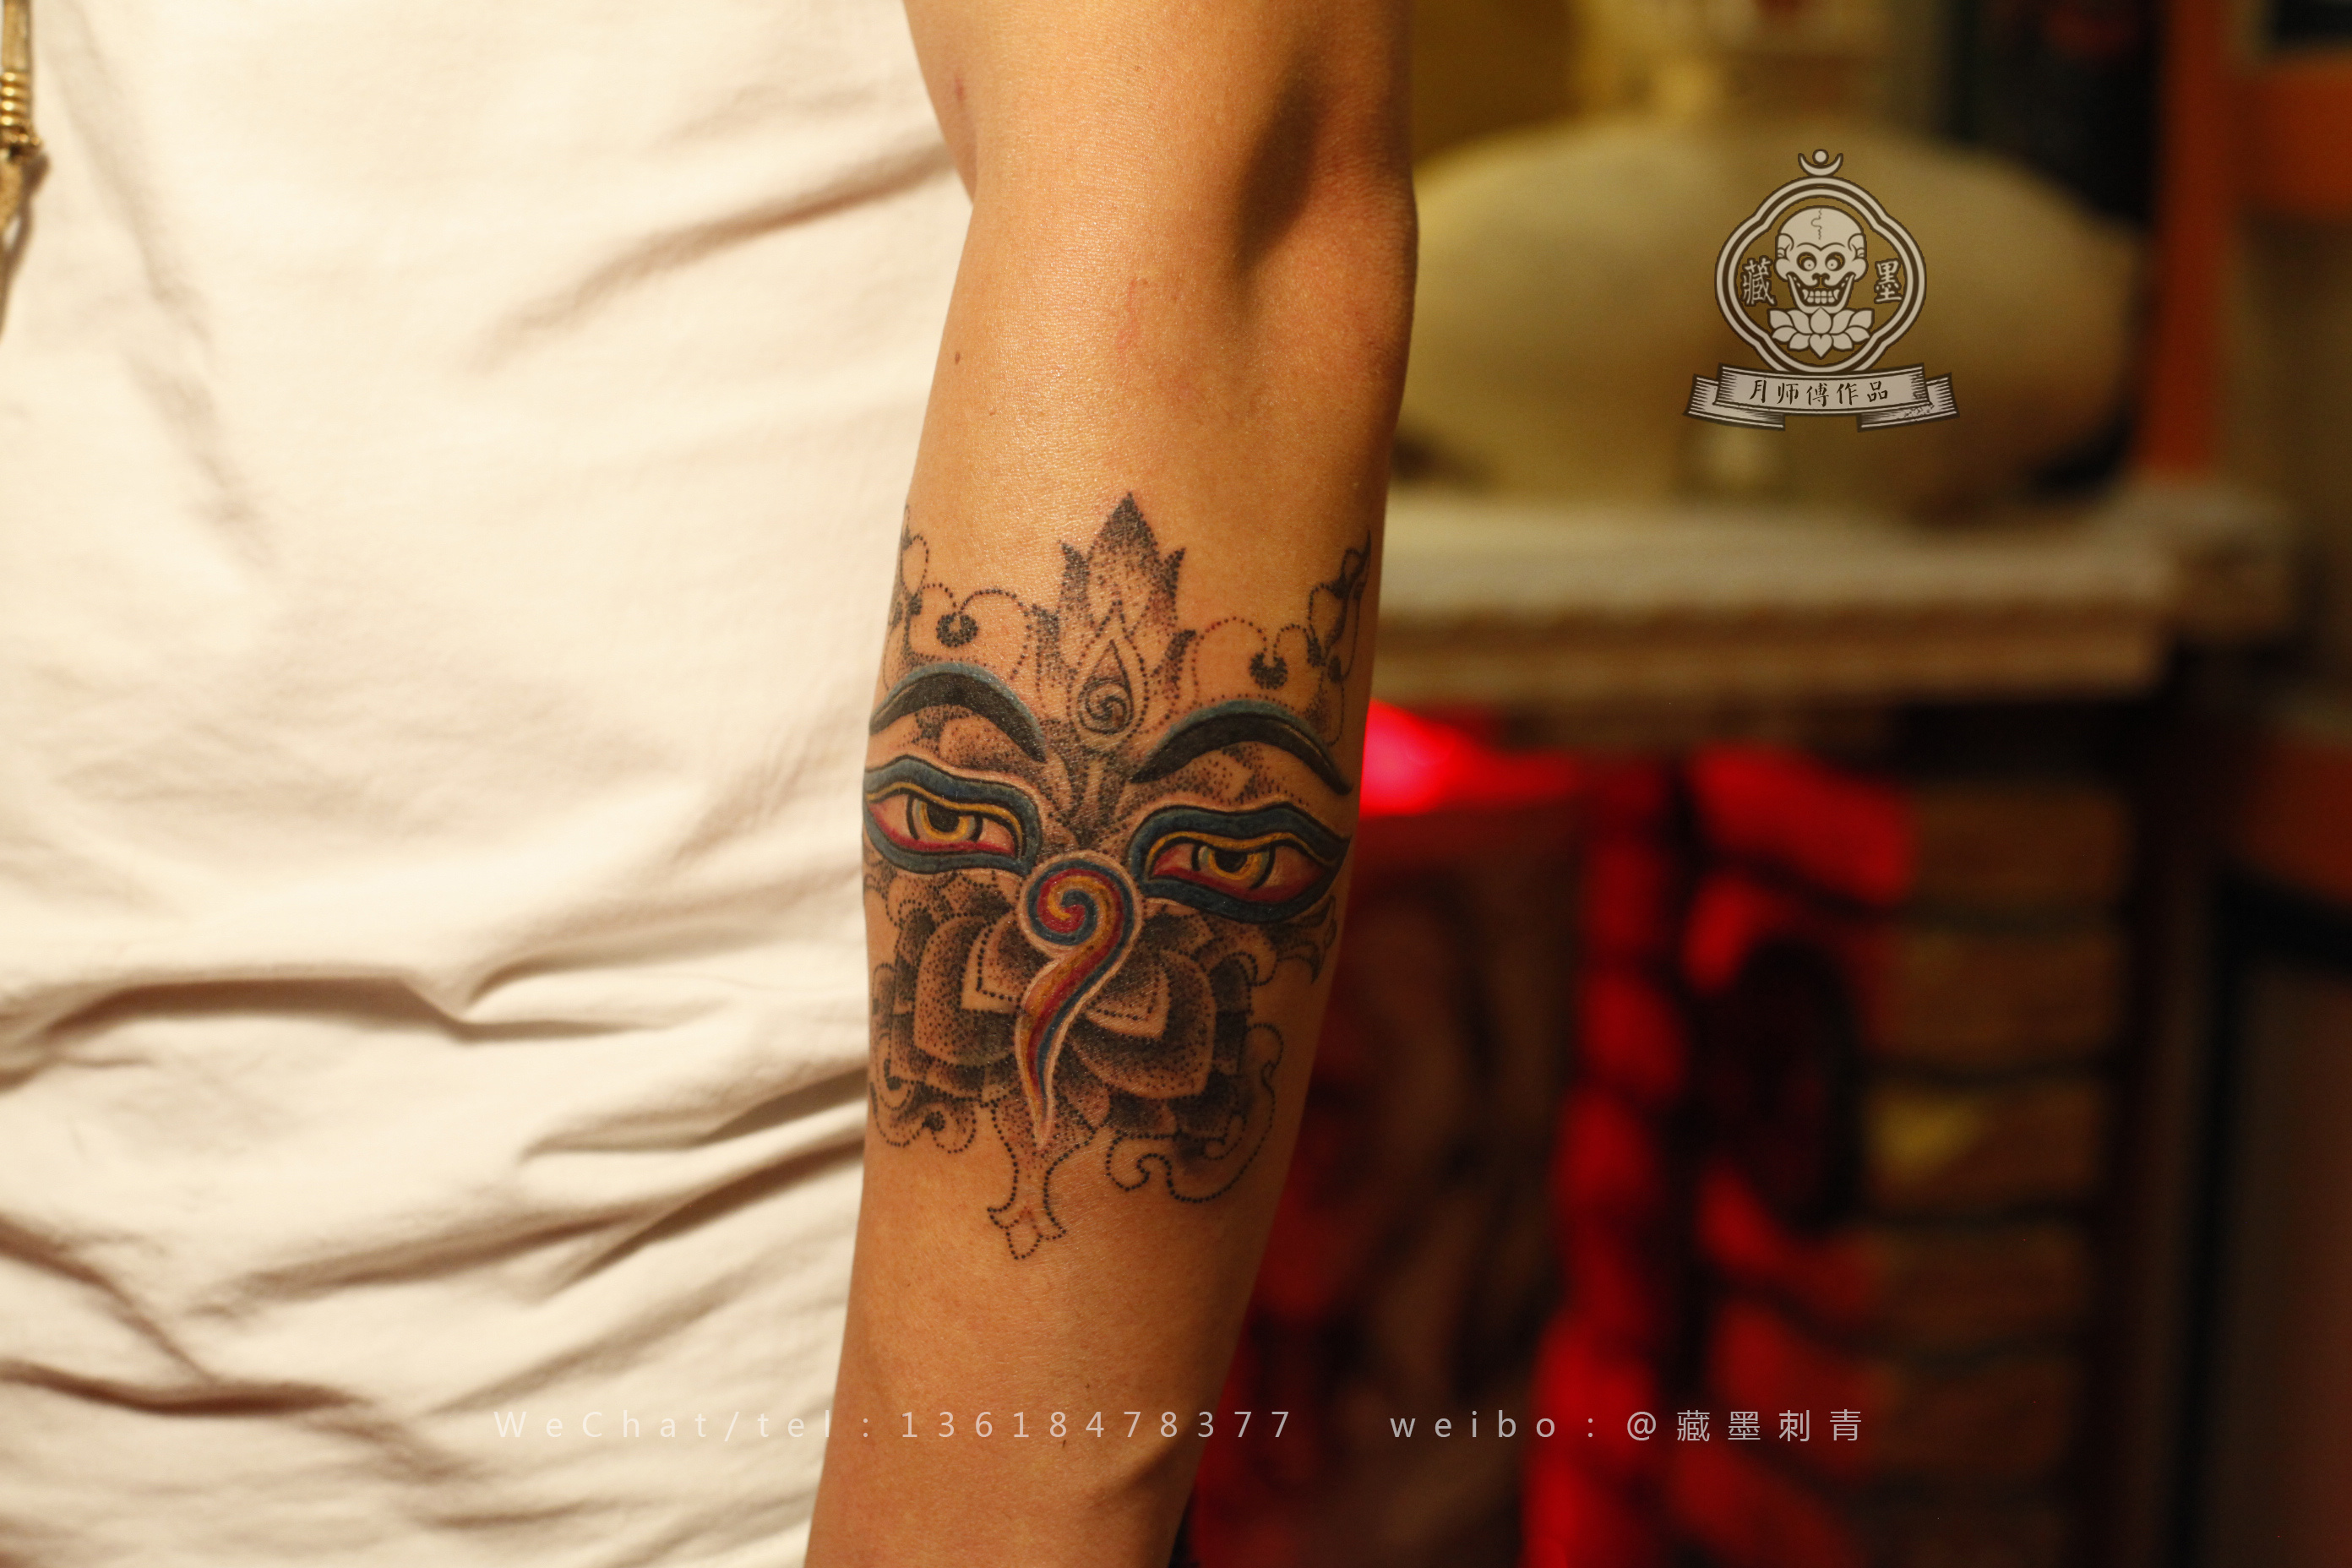 武汉牛先生手背上的新传统风格鬼武士纹身图案 - 武汉纹彩刺青